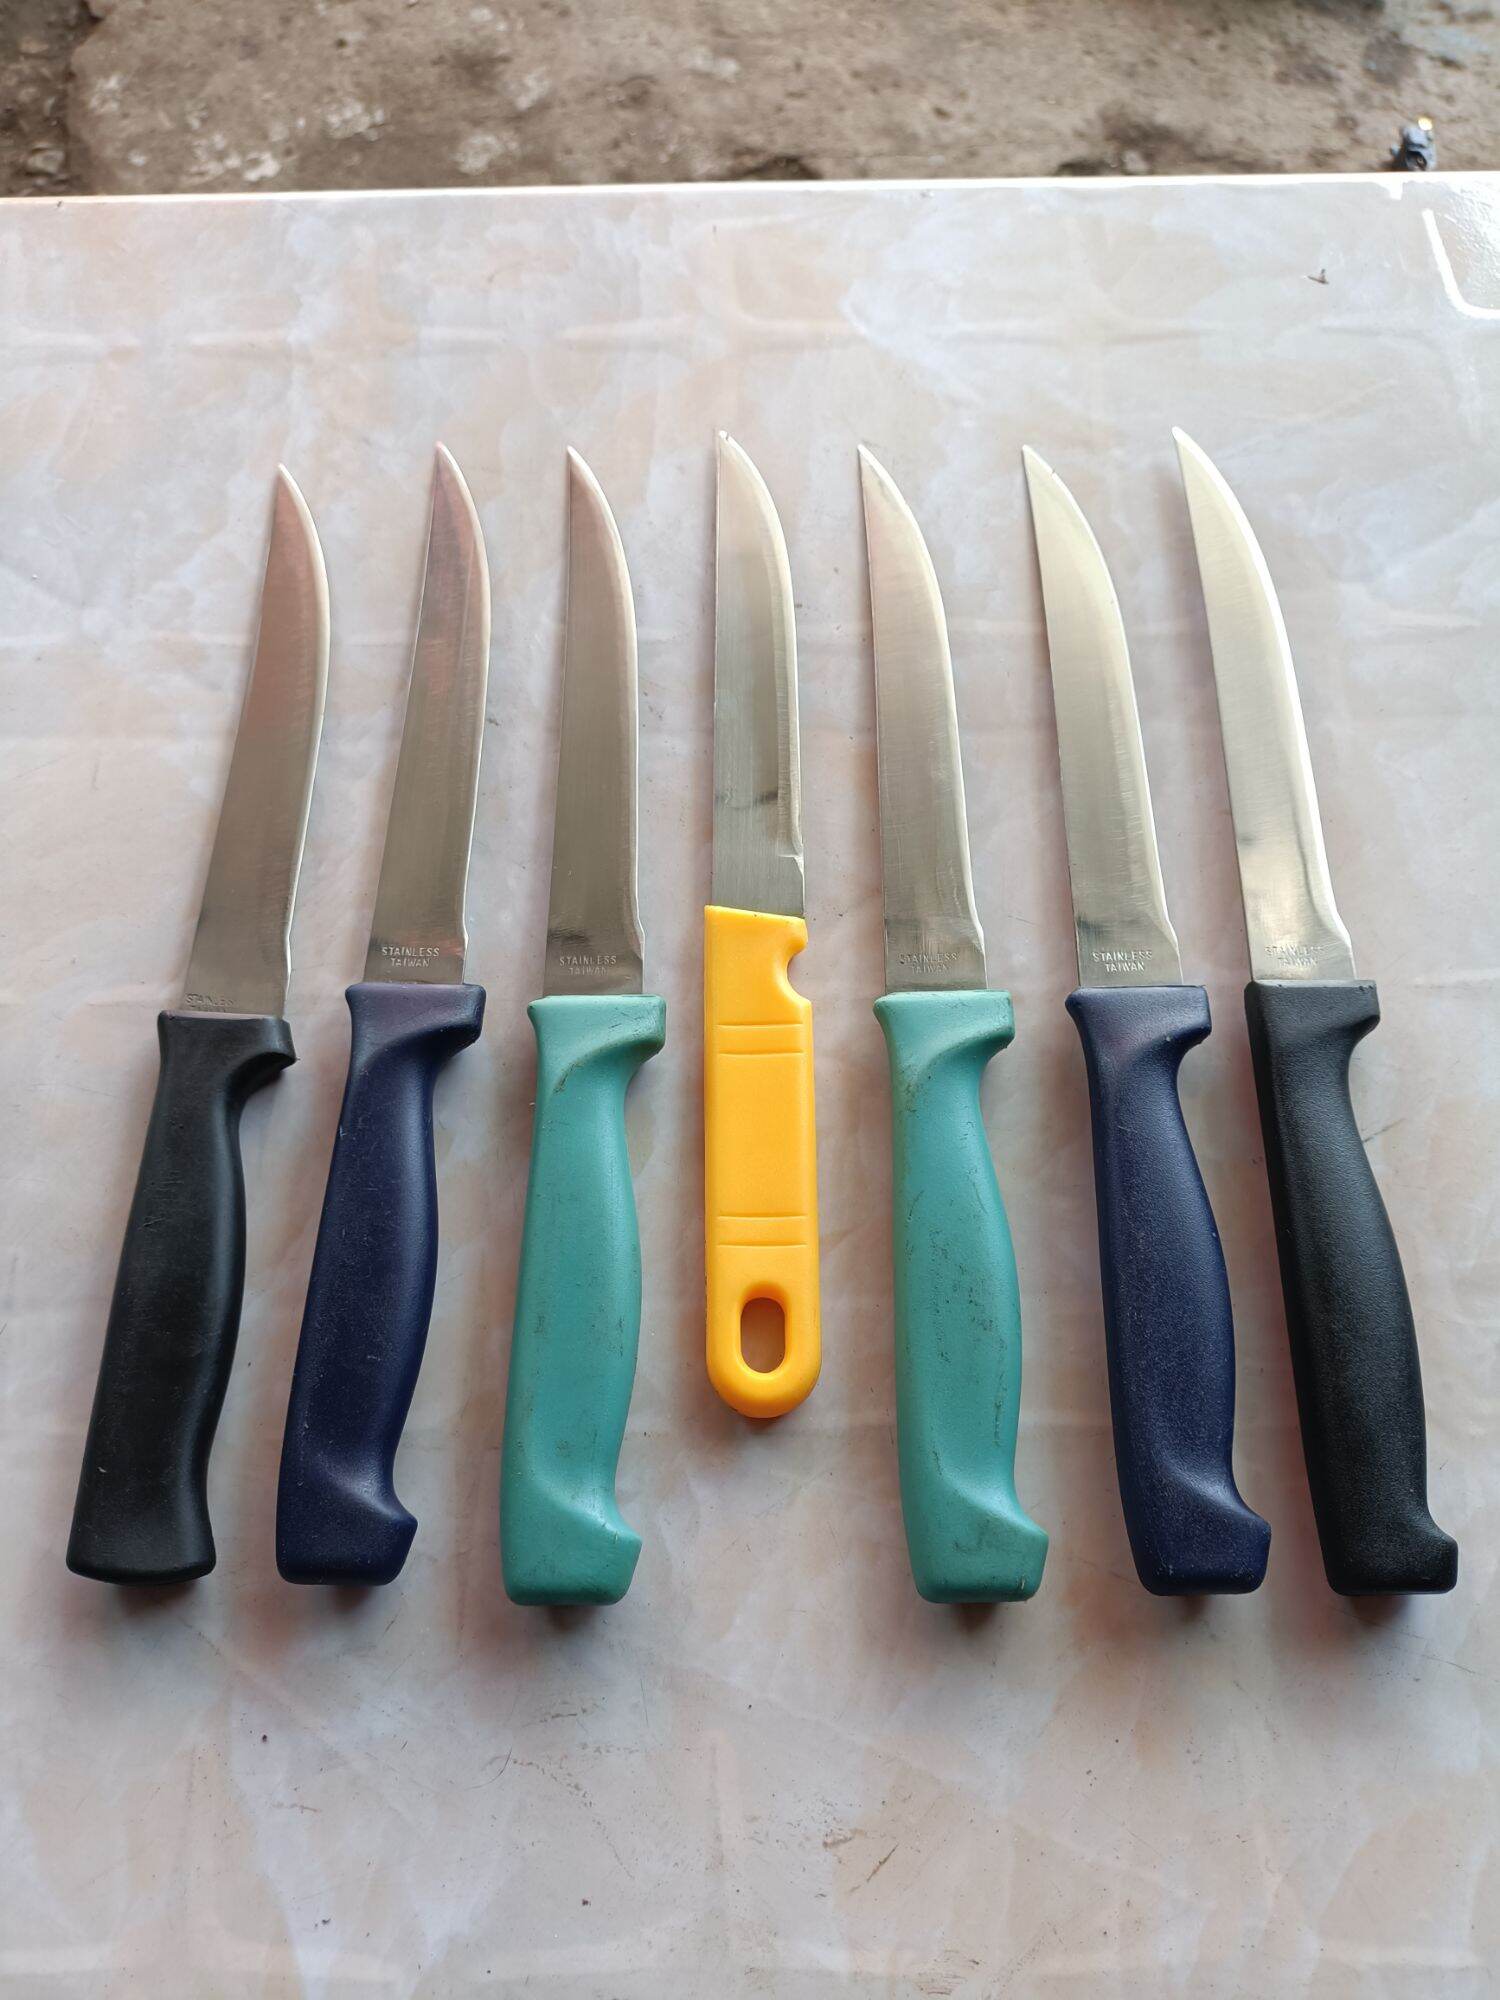 dao bãi bao bén dao được nhập khẩu về từ nước Nhật ( dao dài loan sản xuất )